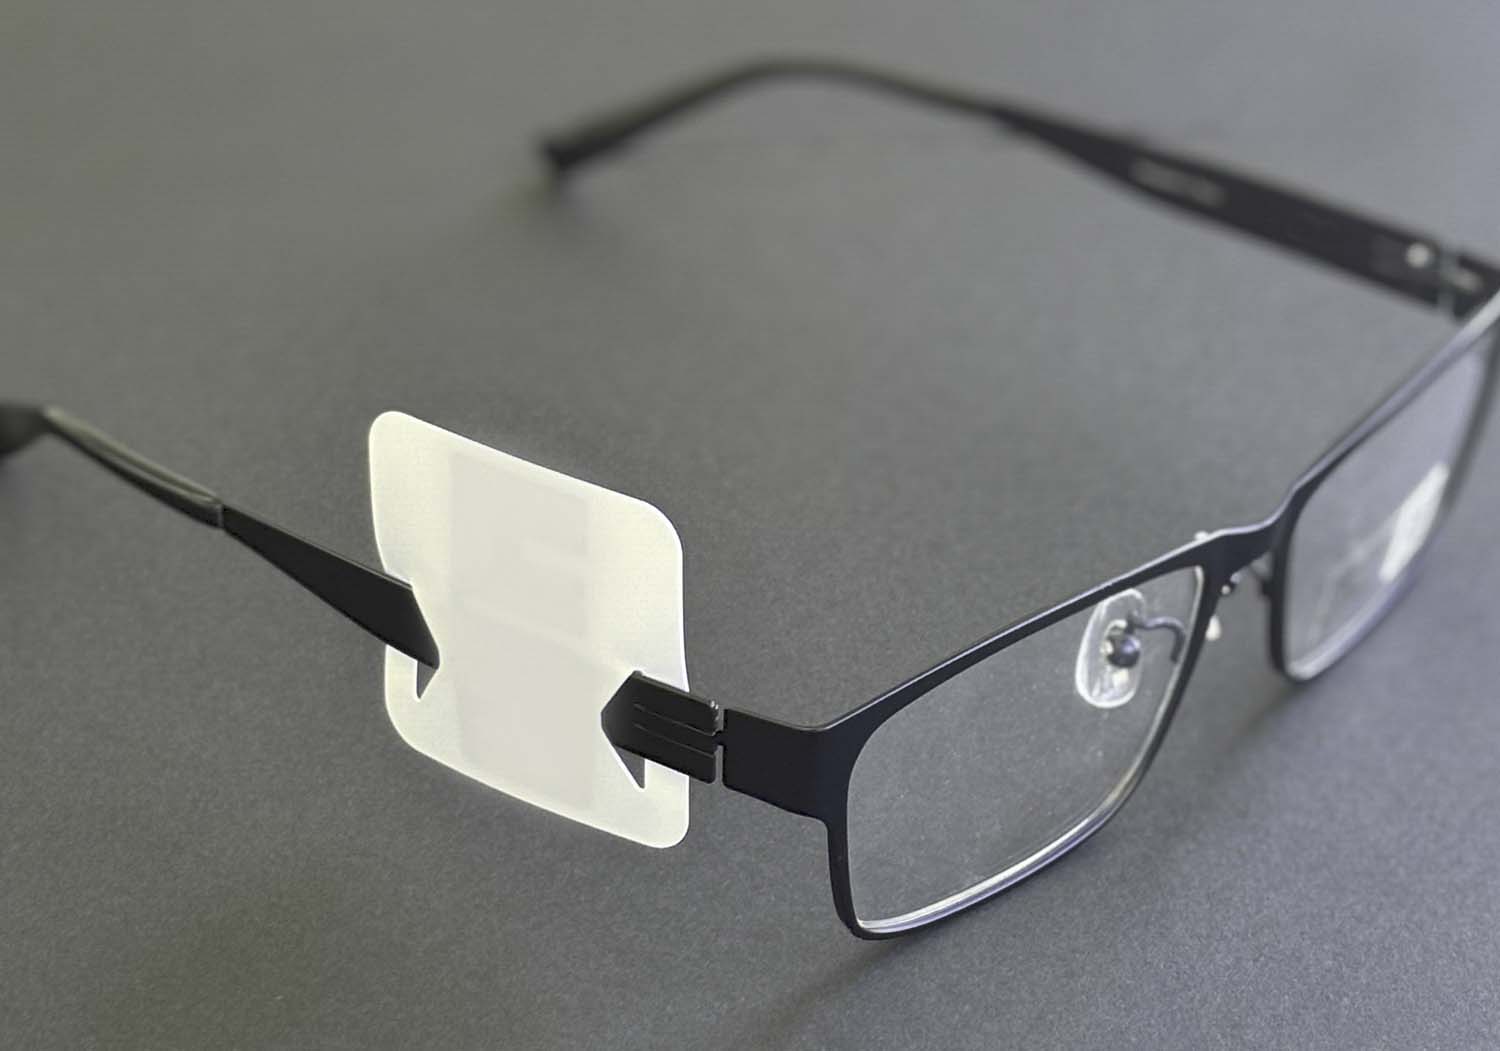 メガネ用RFIDタグの特許登録が完了しました。